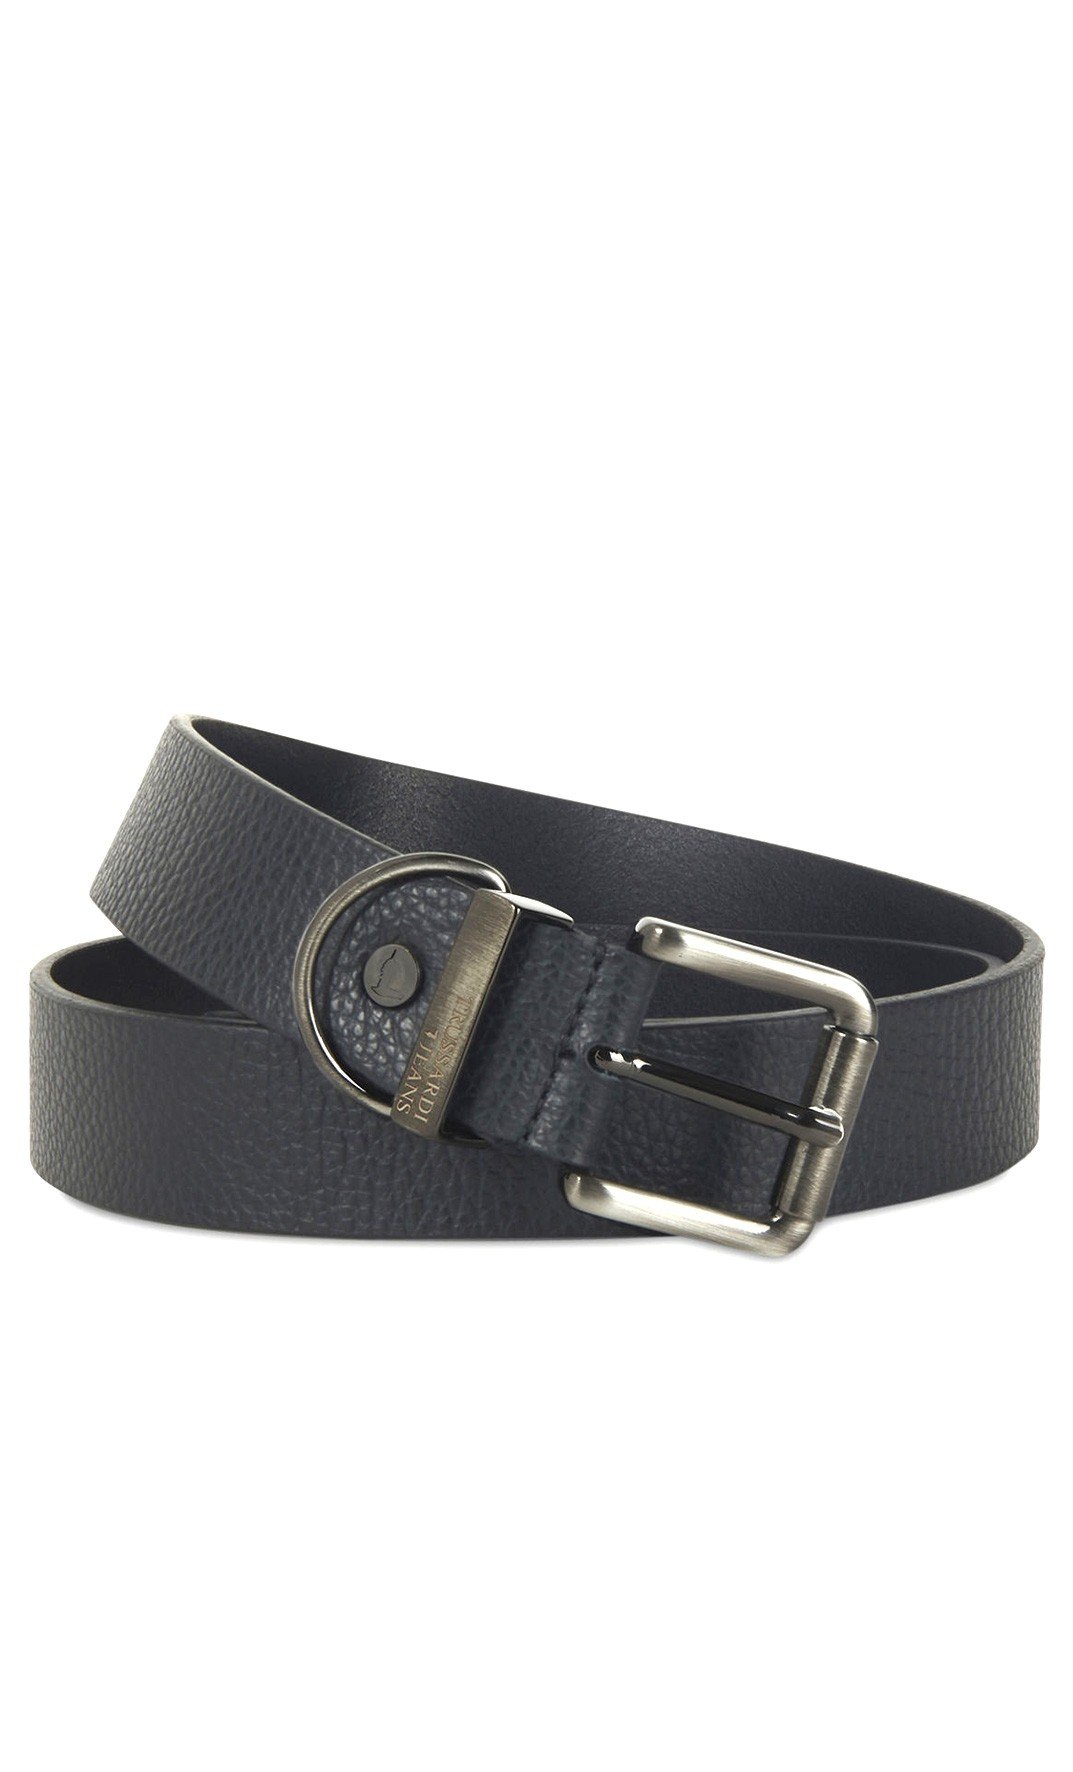 Men's Trussardi hammered leather belt black 71L00113